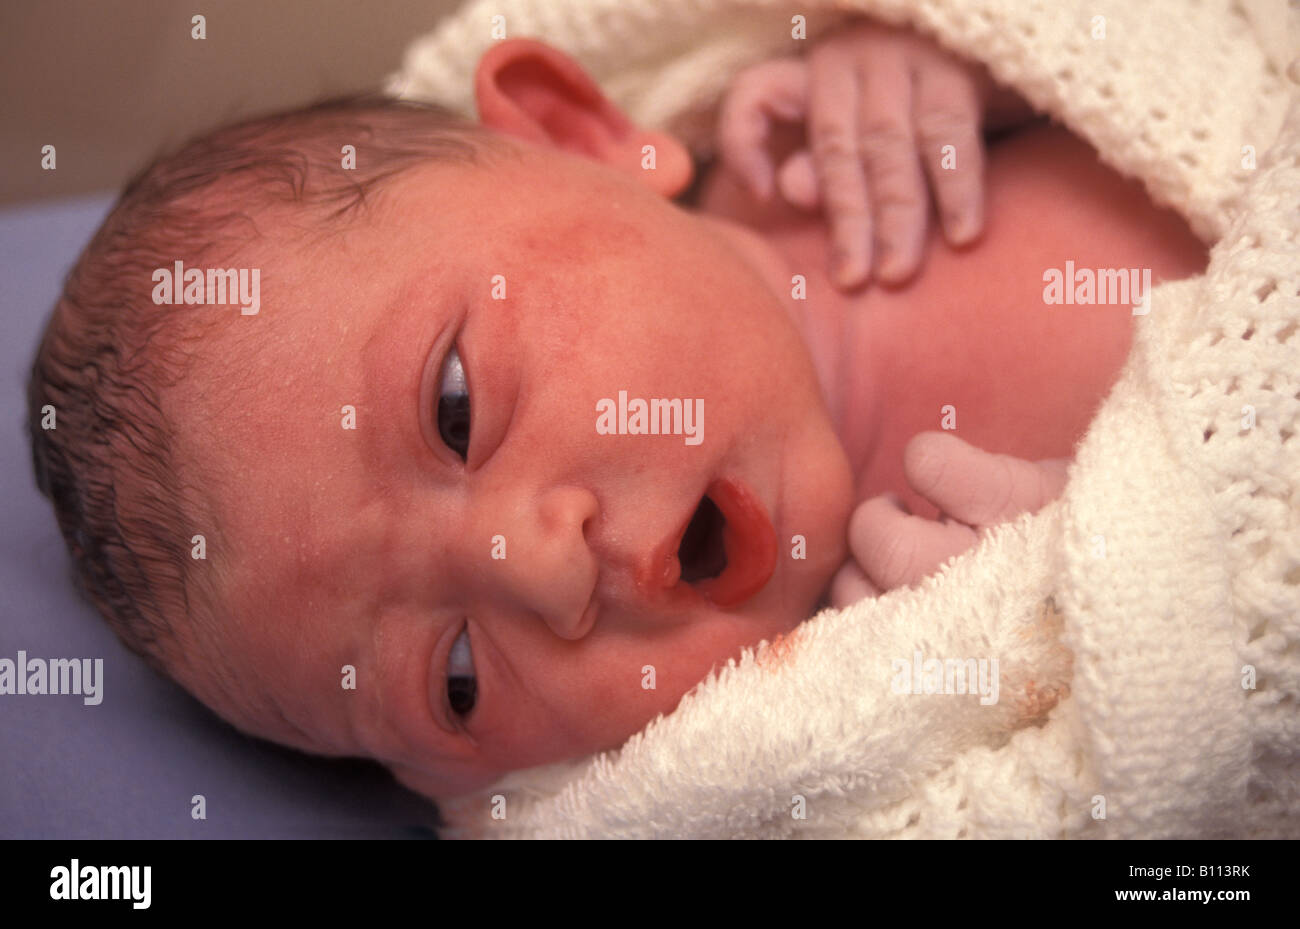 nouveau-né bébé vient de se faire livrer dans une couverture Banque D'Images